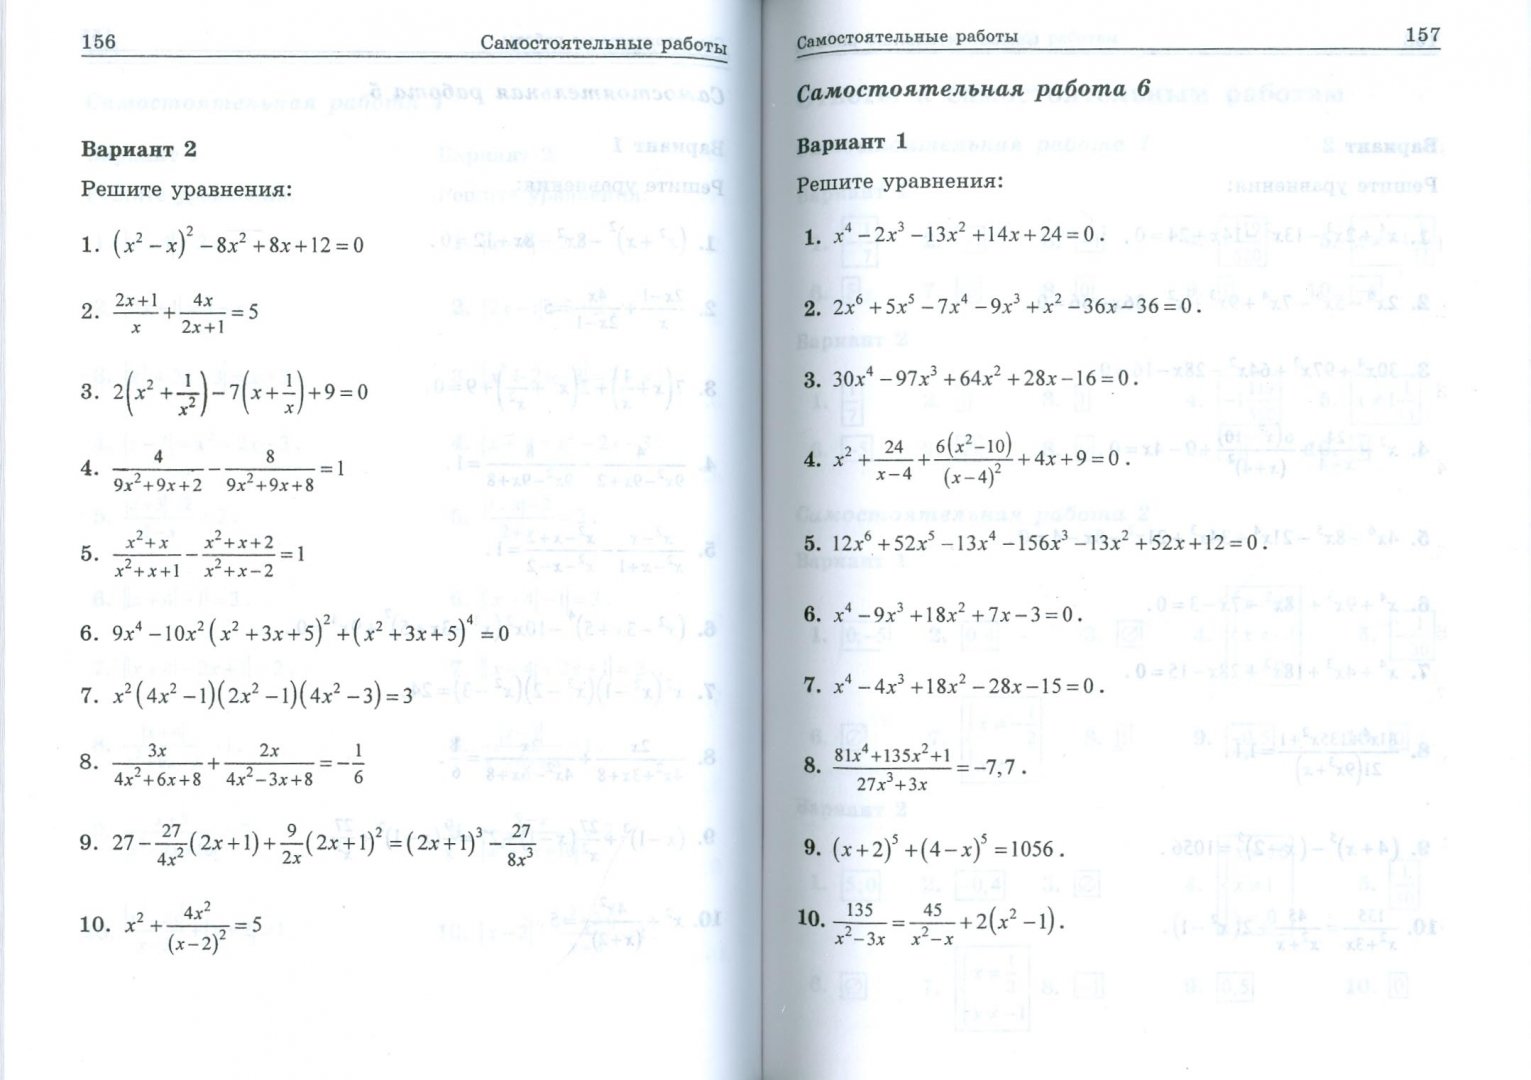 Иллюстрация 1 из 10 для Уравнения - Александр Шахмейстер | Лабиринт - книги. Источник: Лабиринт